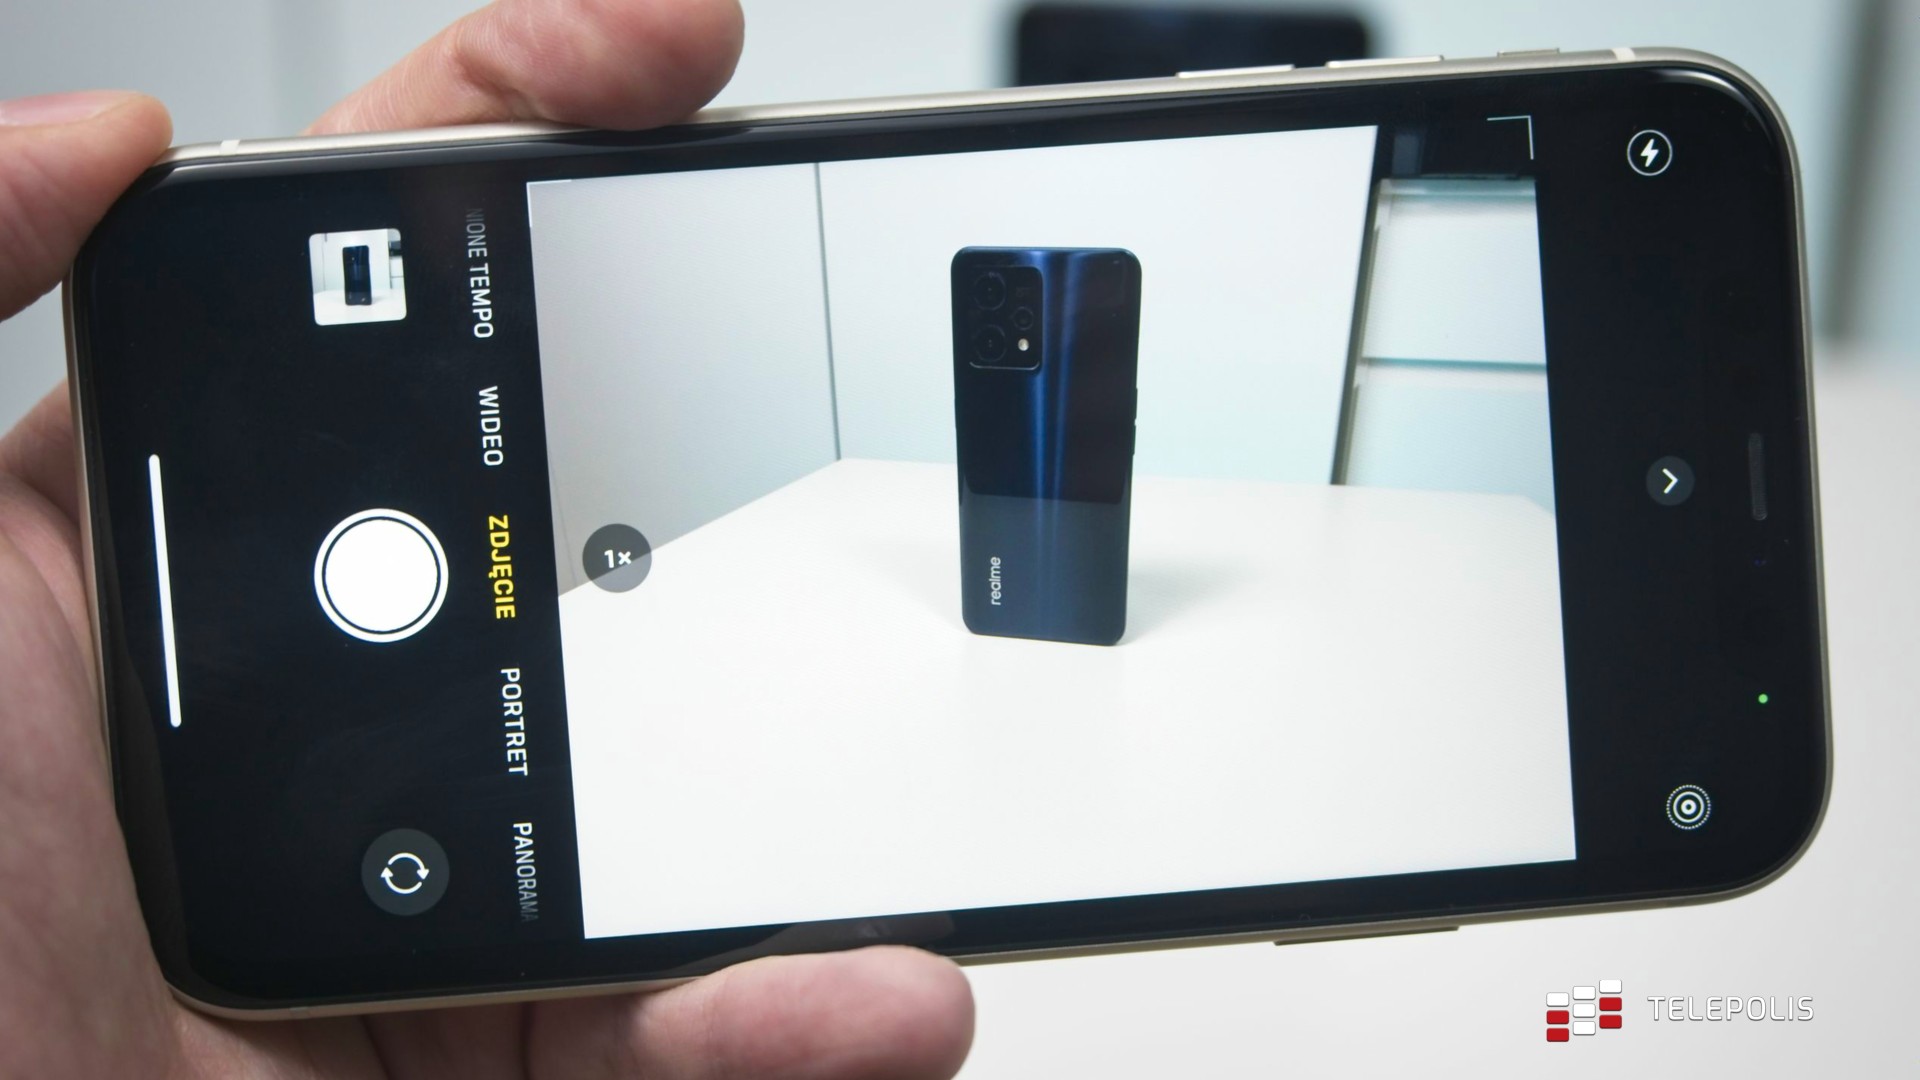 Realme 9 Pro+ kontra iPhone 11 – który robi lepsze zdjęcia?